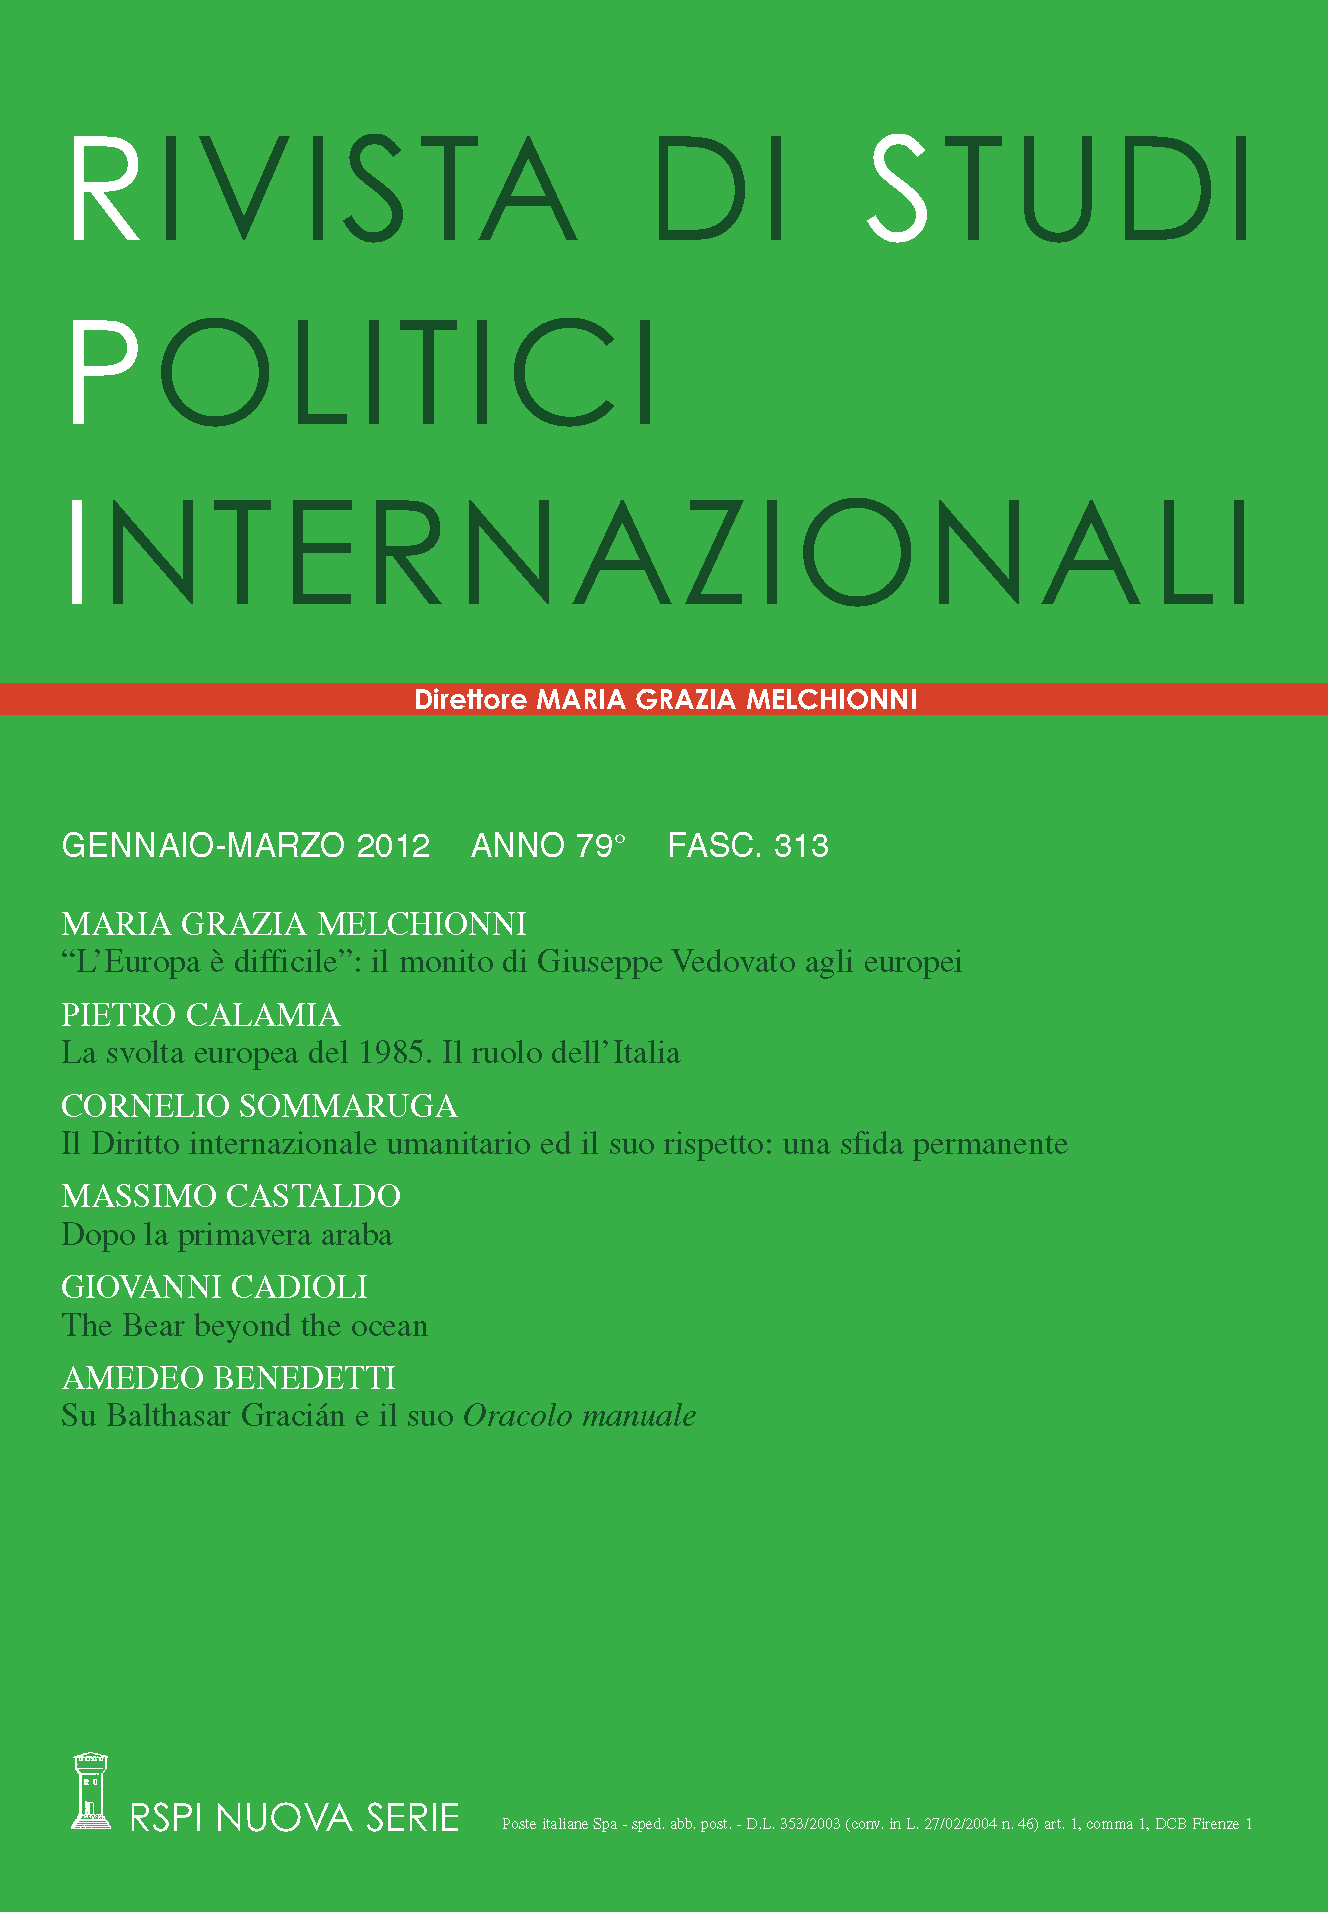 Rivista di studi politici internazionali - home page